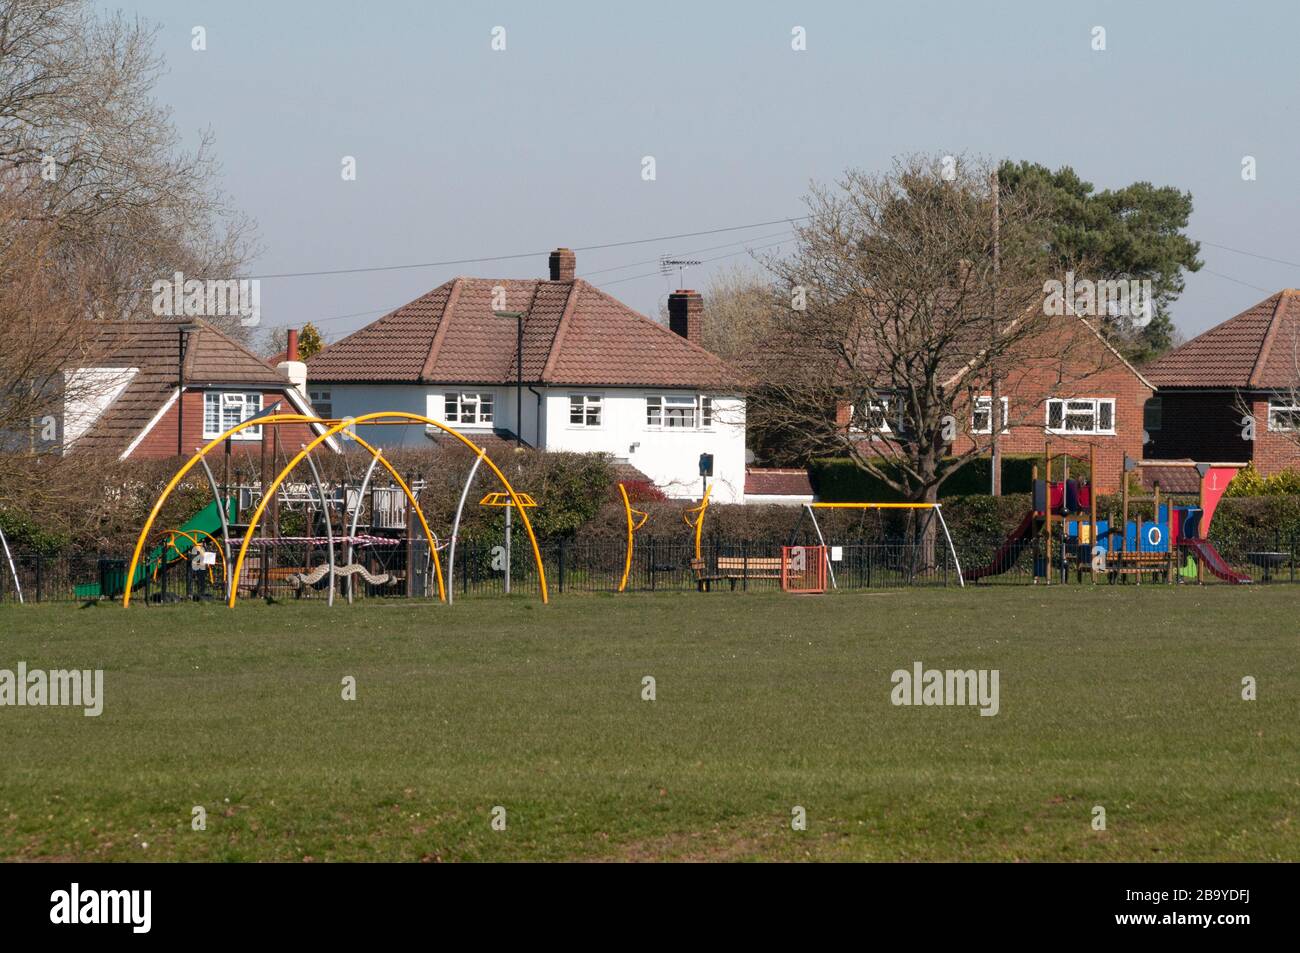 Normalement occupé par ce beau temps, une aire de jeux pour enfants est vide à Surrey, en Angleterre Banque D'Images